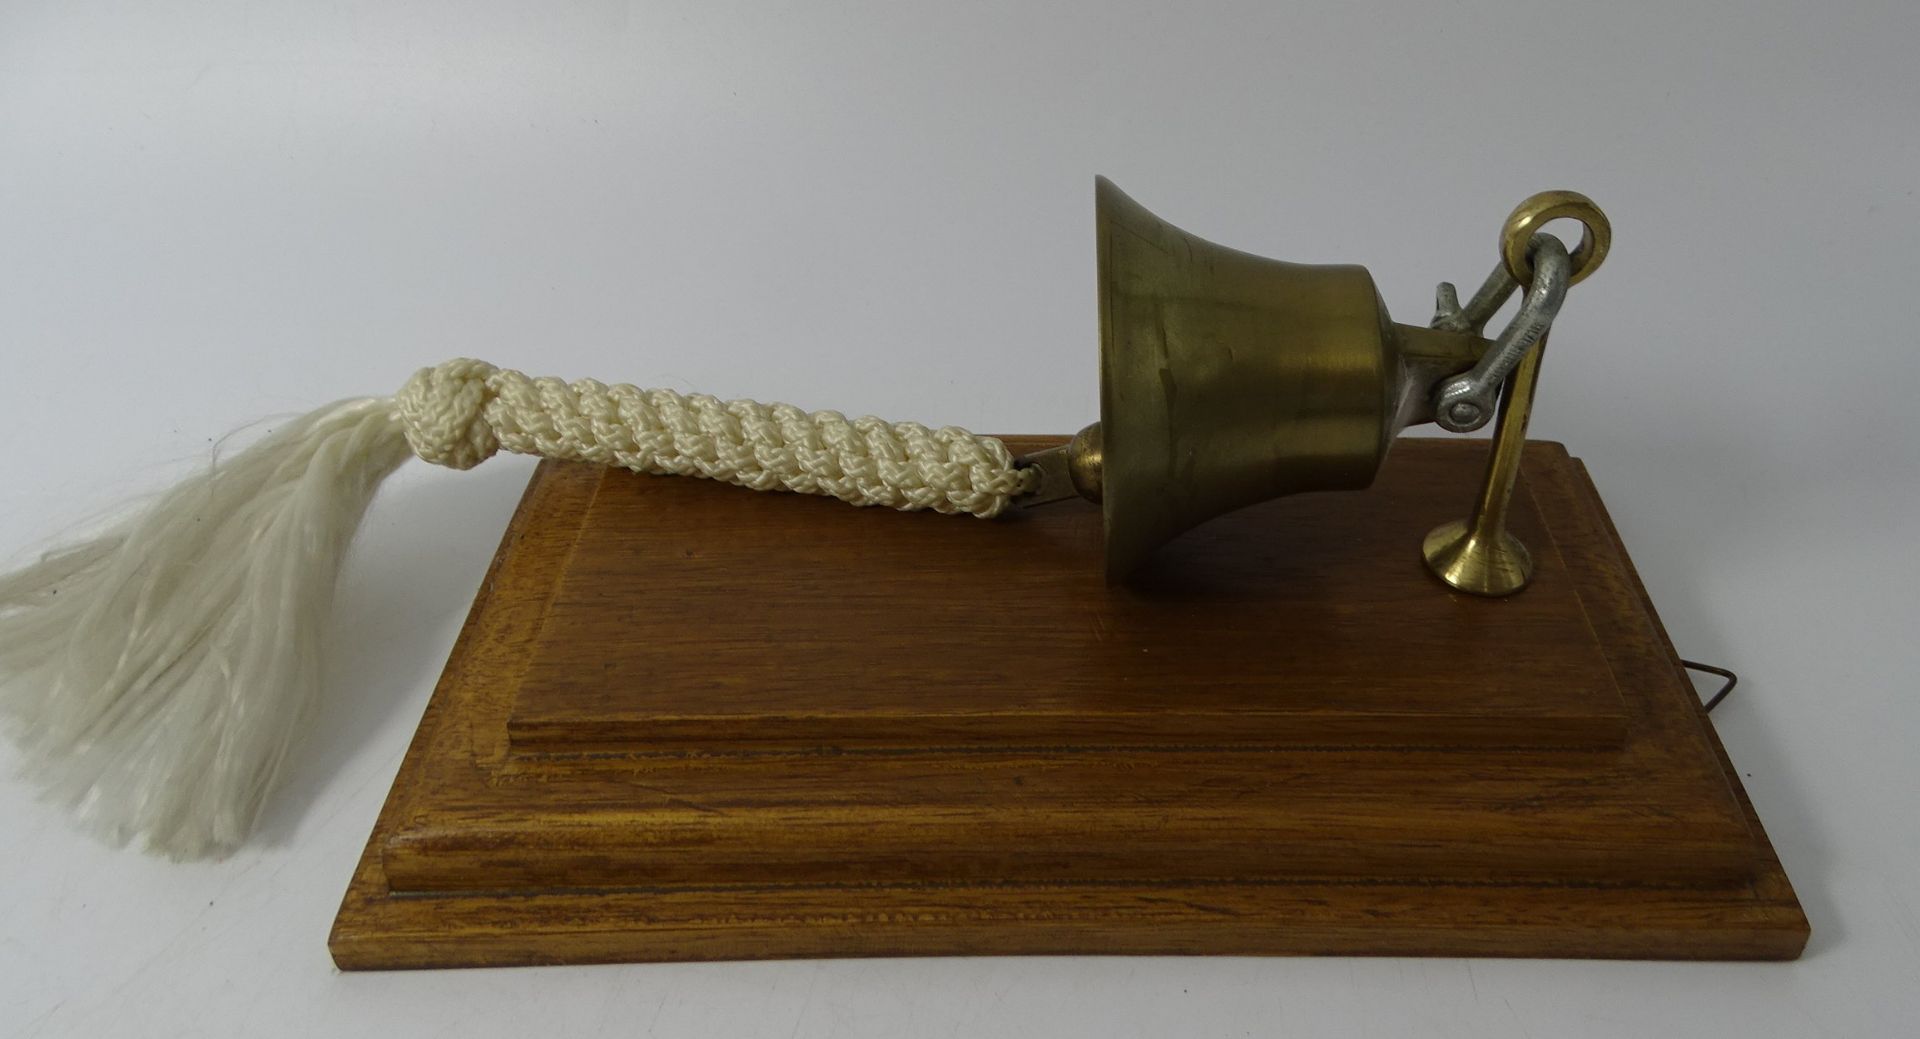 kl. Schiffsglocke auf Holzbrett mit Tau, Messing, 23x12 cm - Bild 3 aus 4